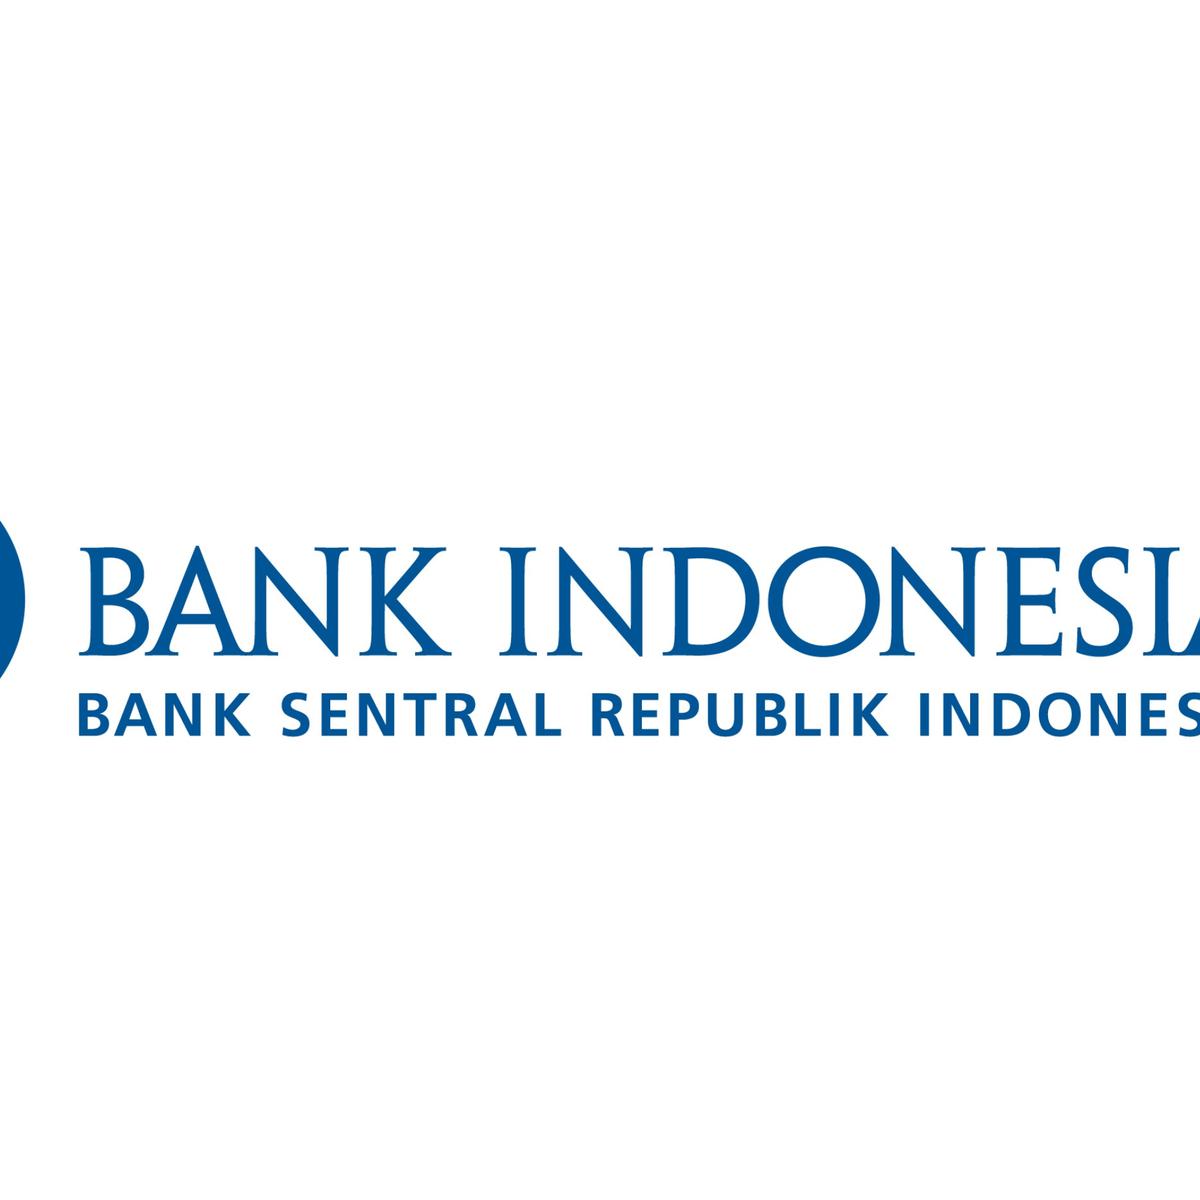 Sebagai bank sentral, bank indonesia memiliki tujuan terkait dengan ekonomi negara. apa tujuan bank sentral?